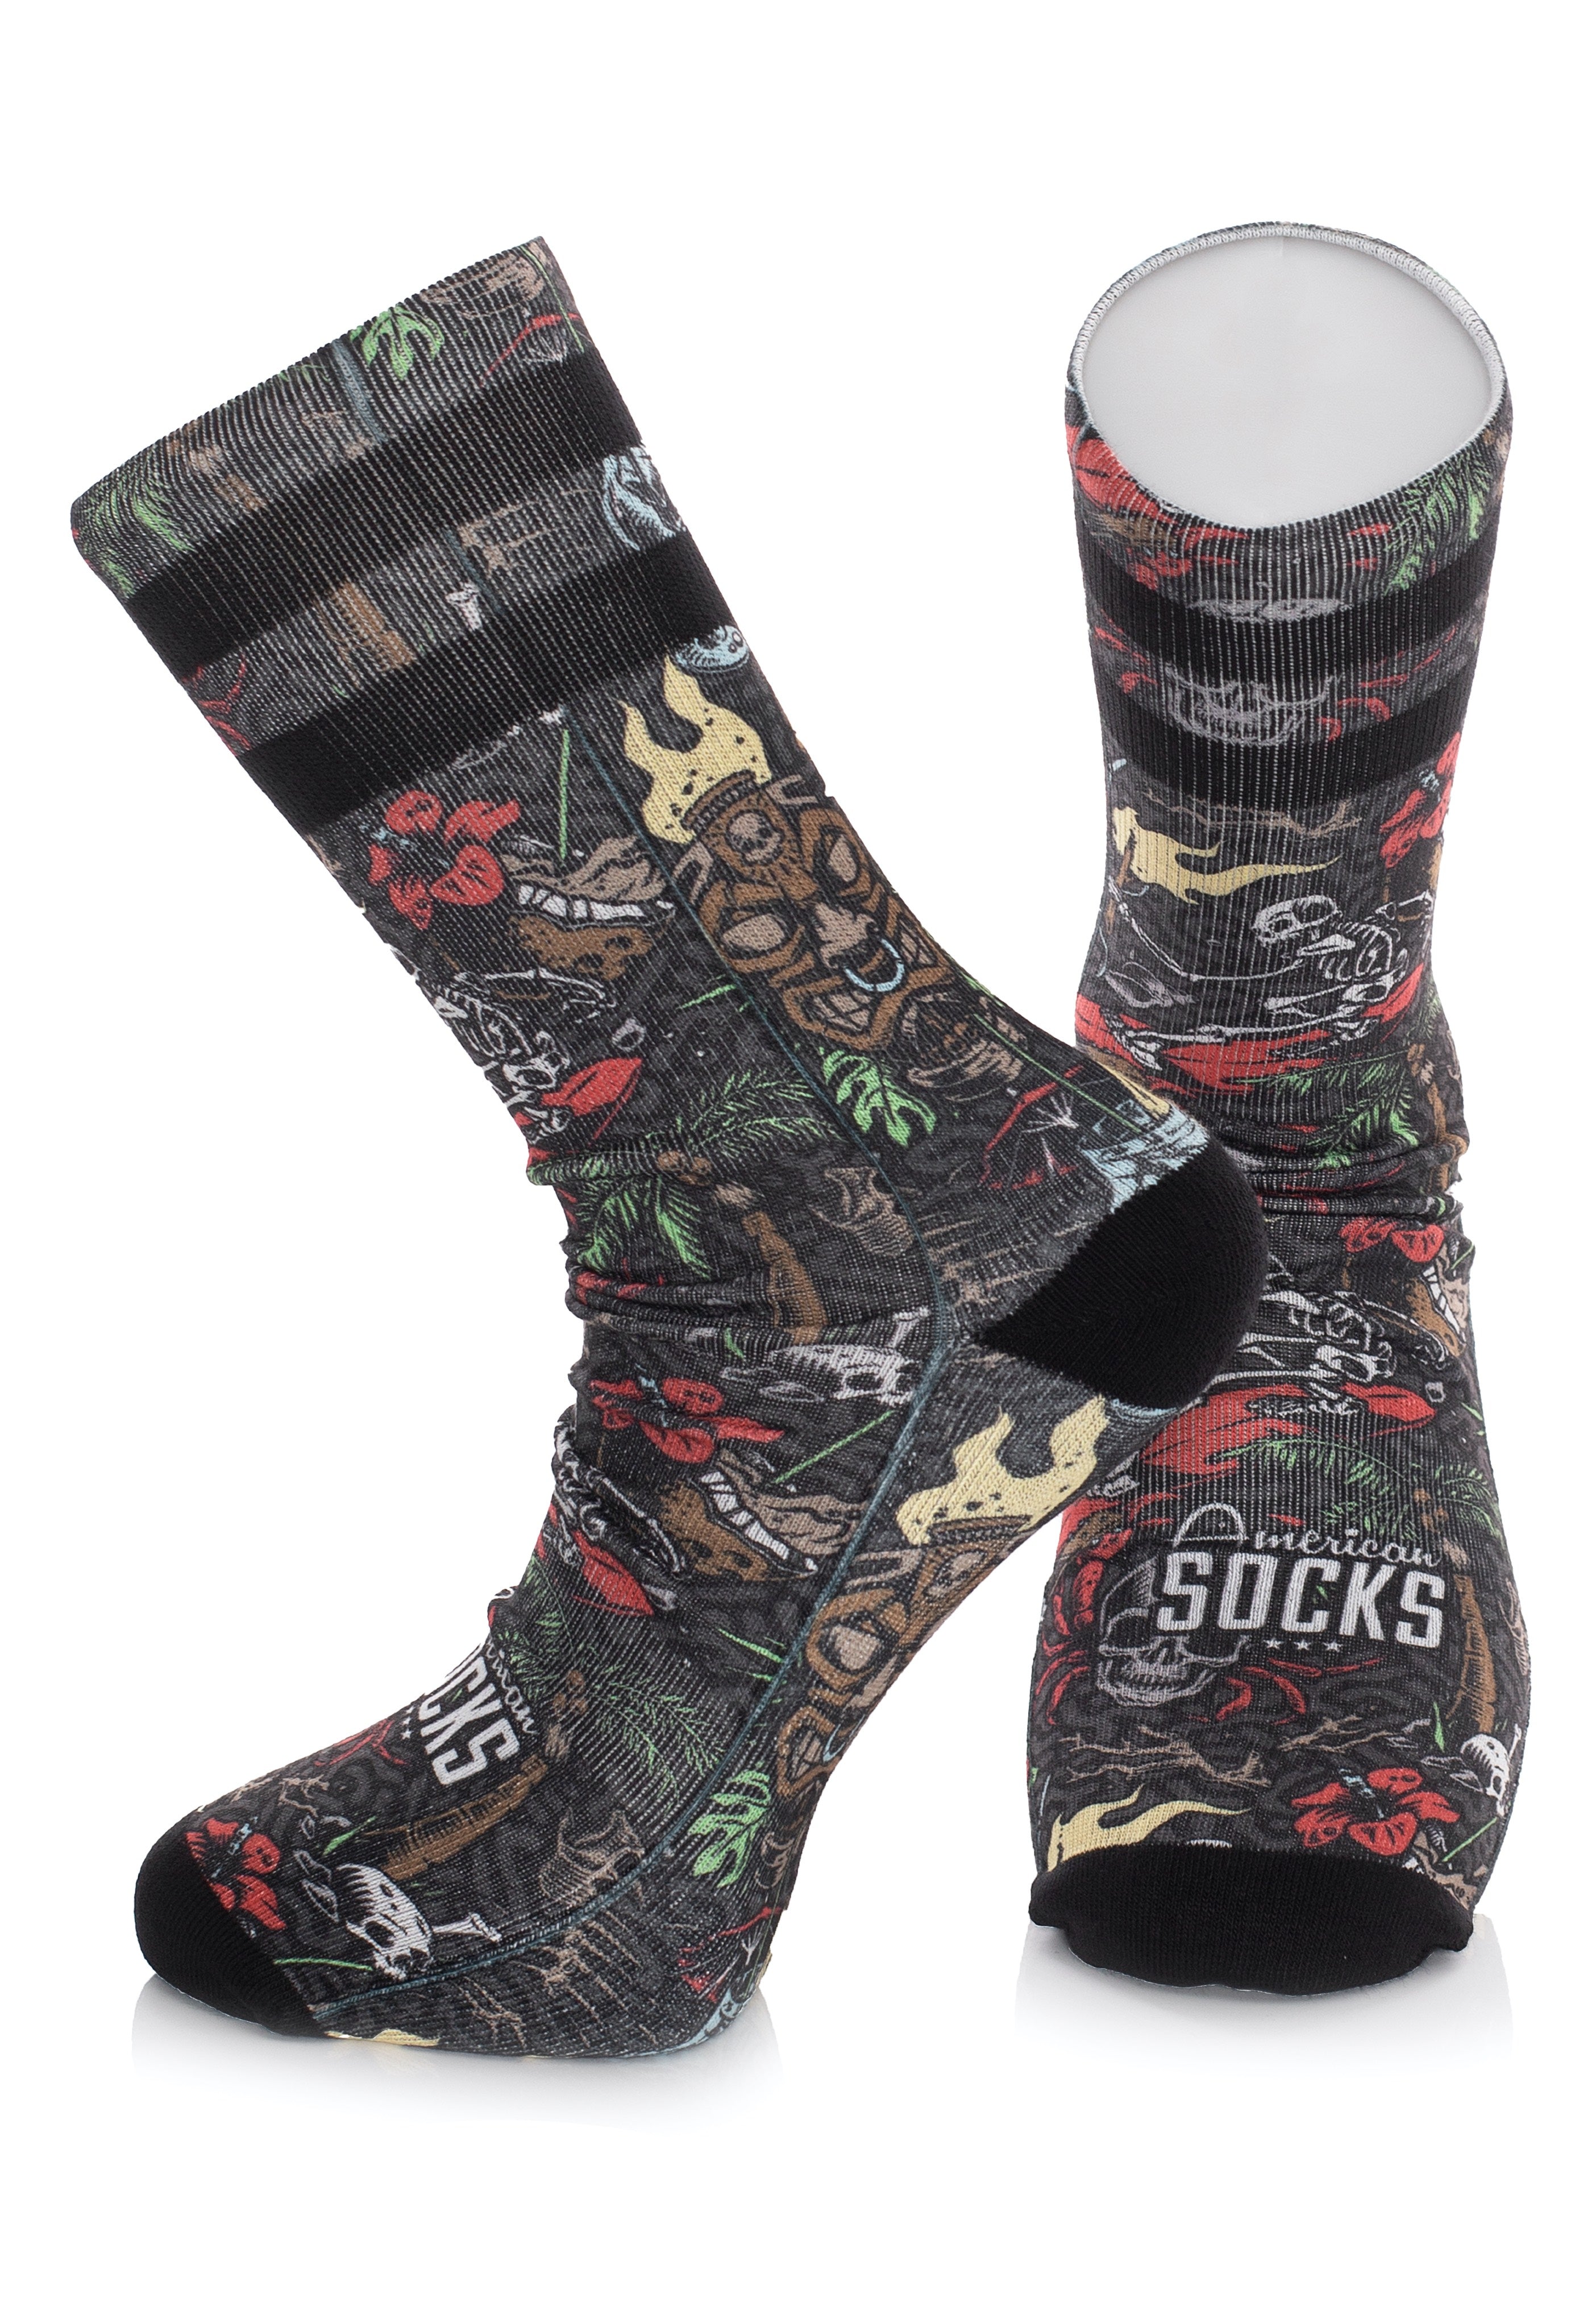 American Socks - Aloha Mid High Multicolored - Socks